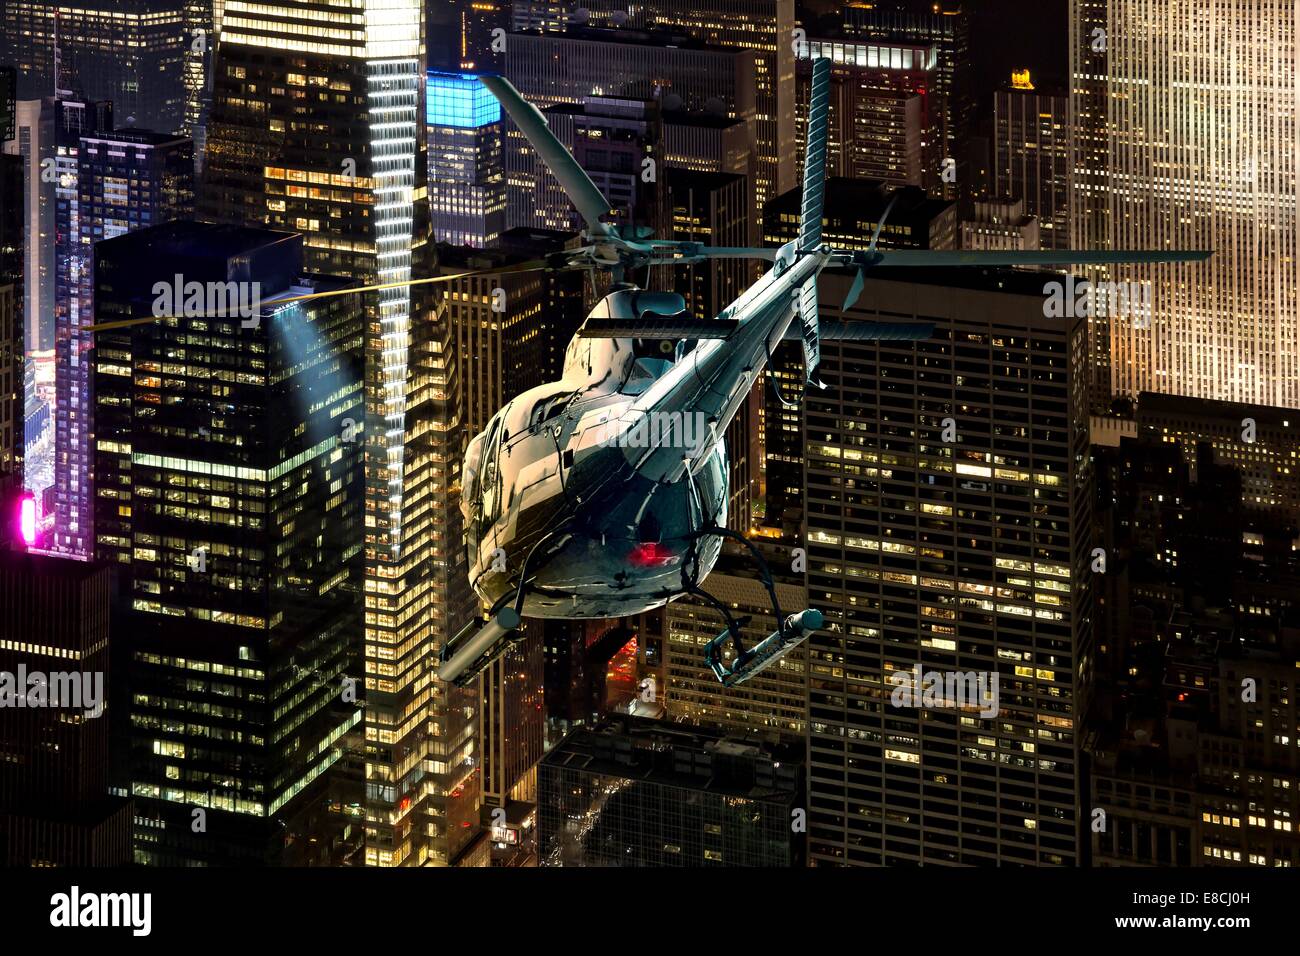 Helicóptero vuelo nocturno entre los rascacielos de Nueva York Manhattan district Foto de stock